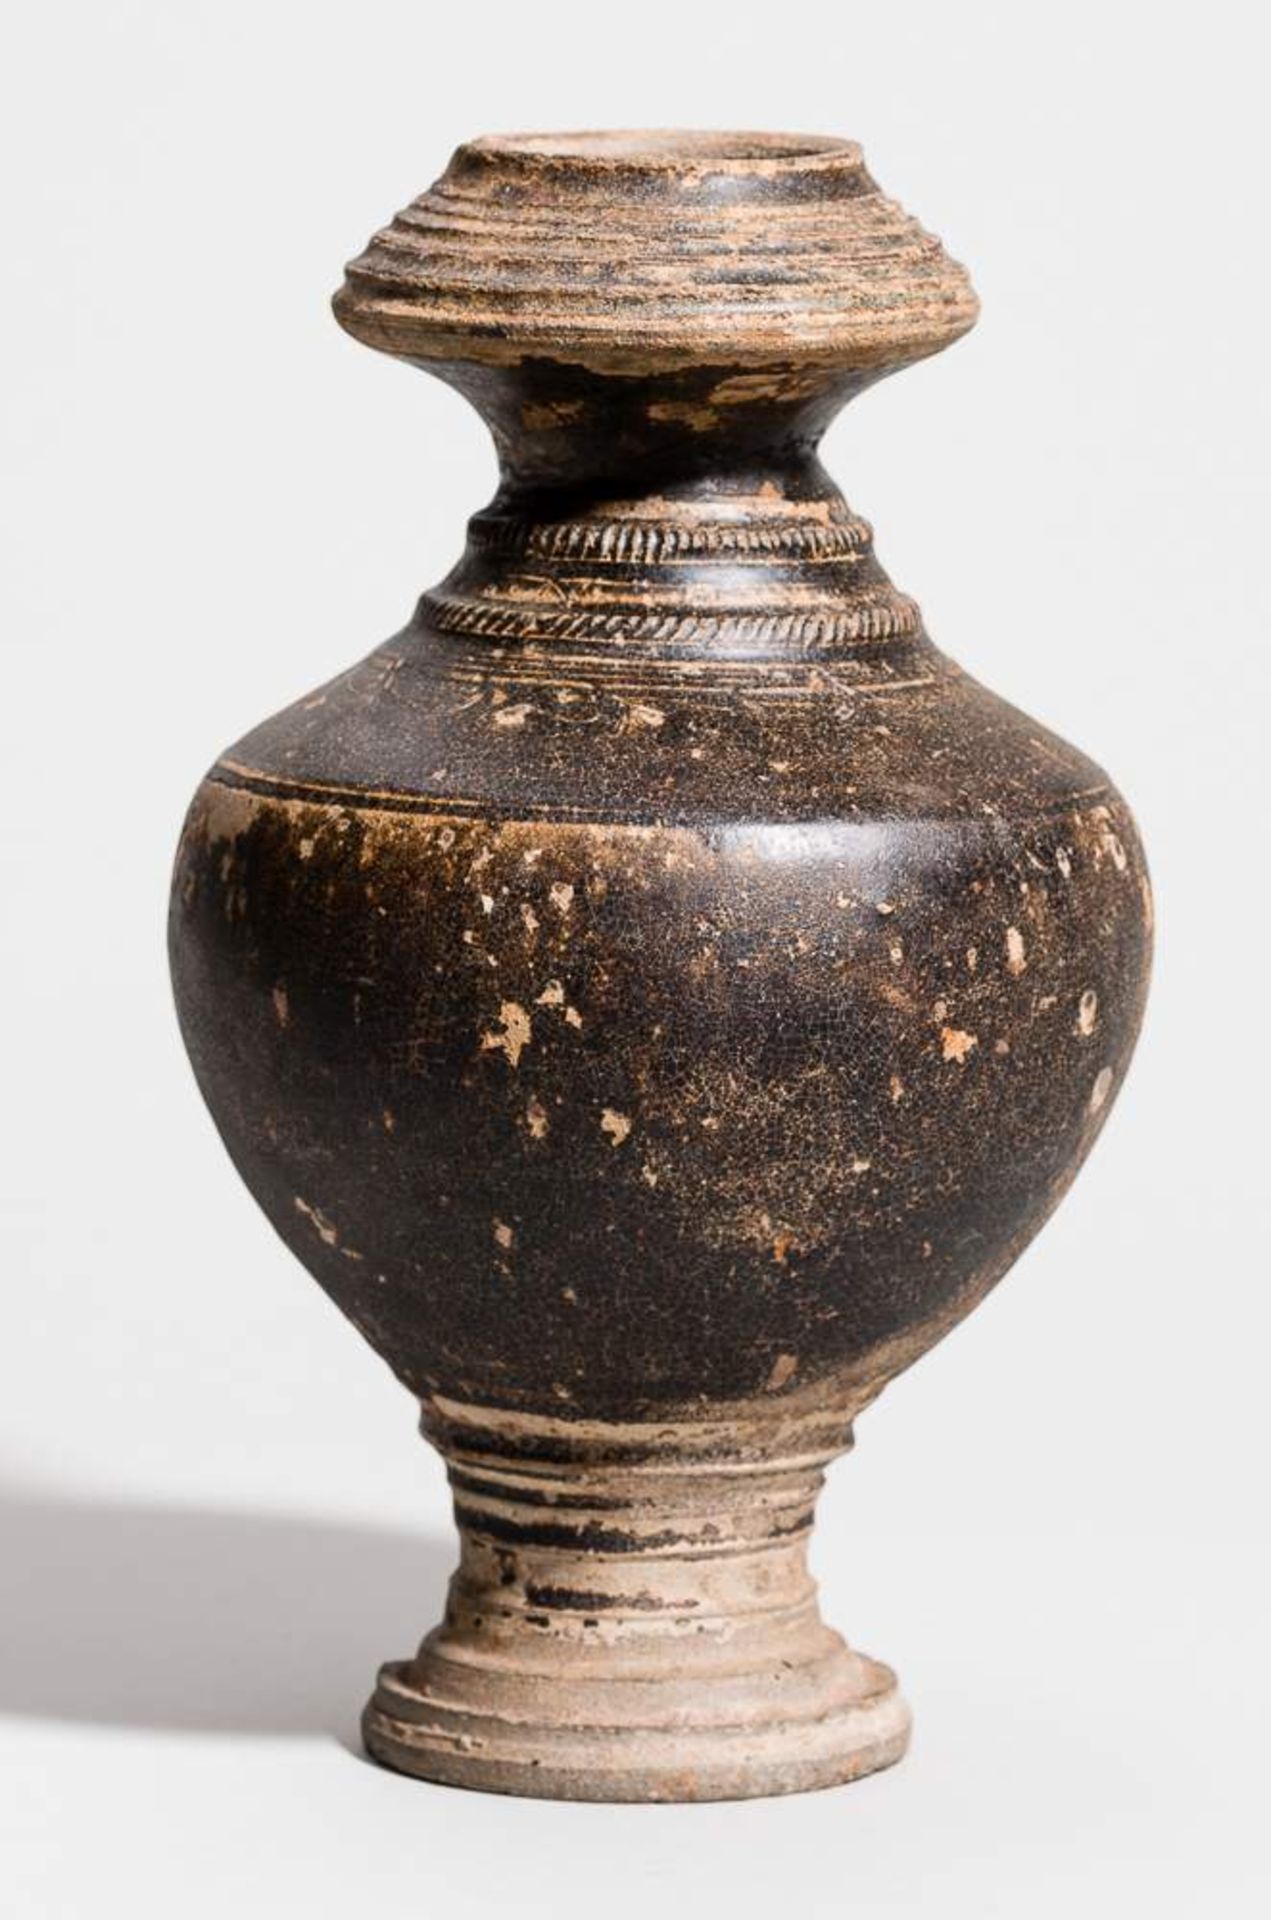 VASENFÖRMIGES GEFÄSS Keramik. Kambodscha, Altes Königreich Khmer, 11. bis 12. Jh. Seltener Typus,